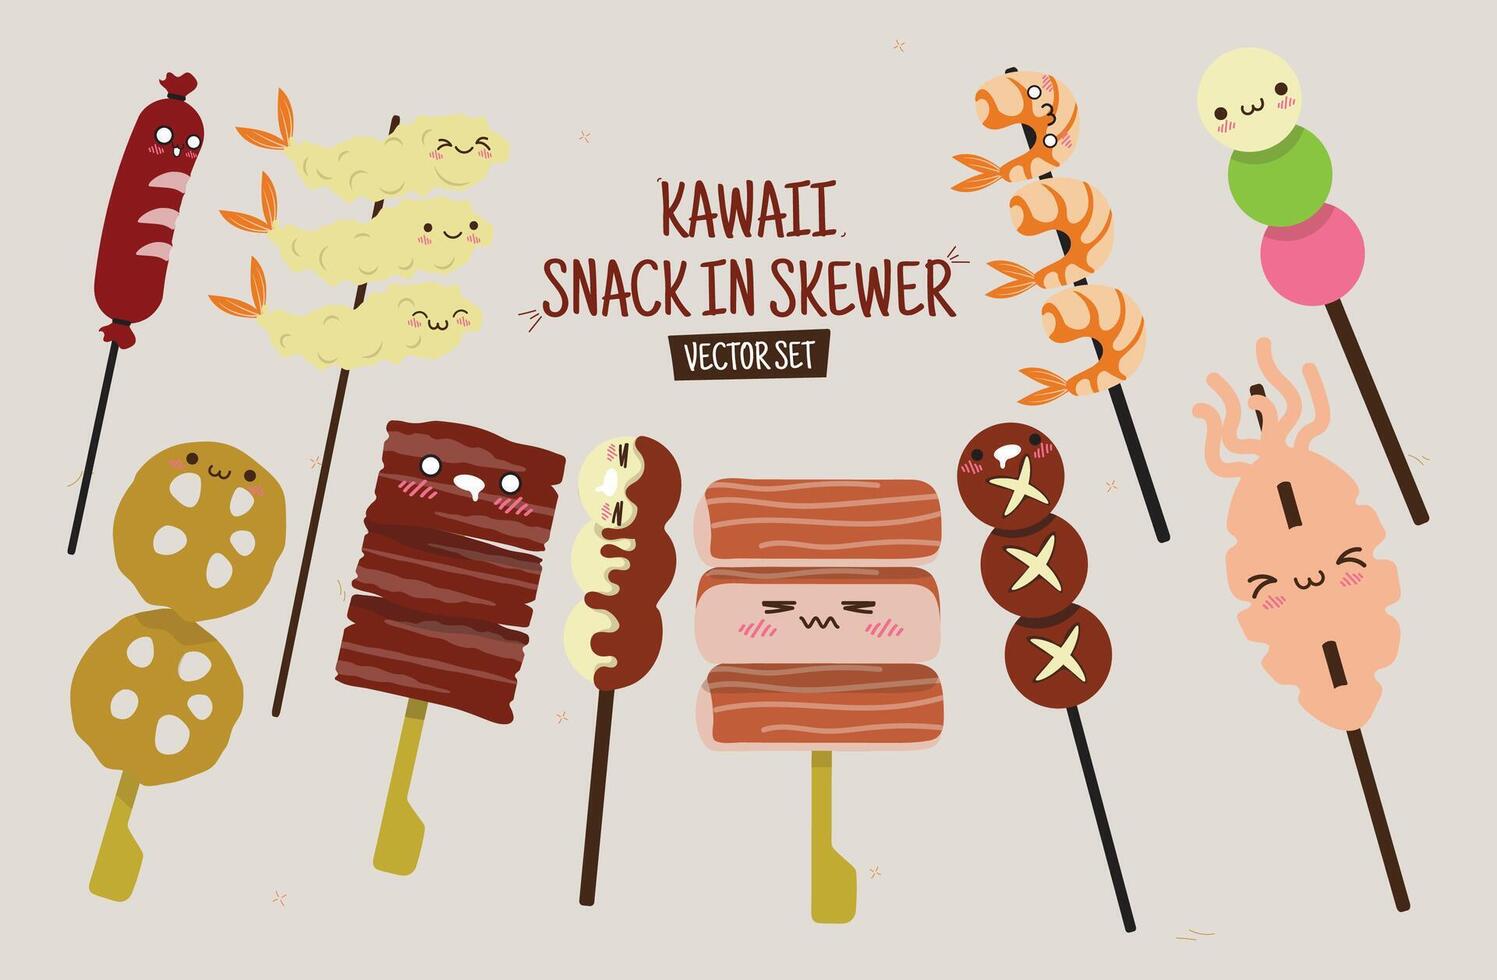 Kawaii Snack in Skewer Illustration Vector Set